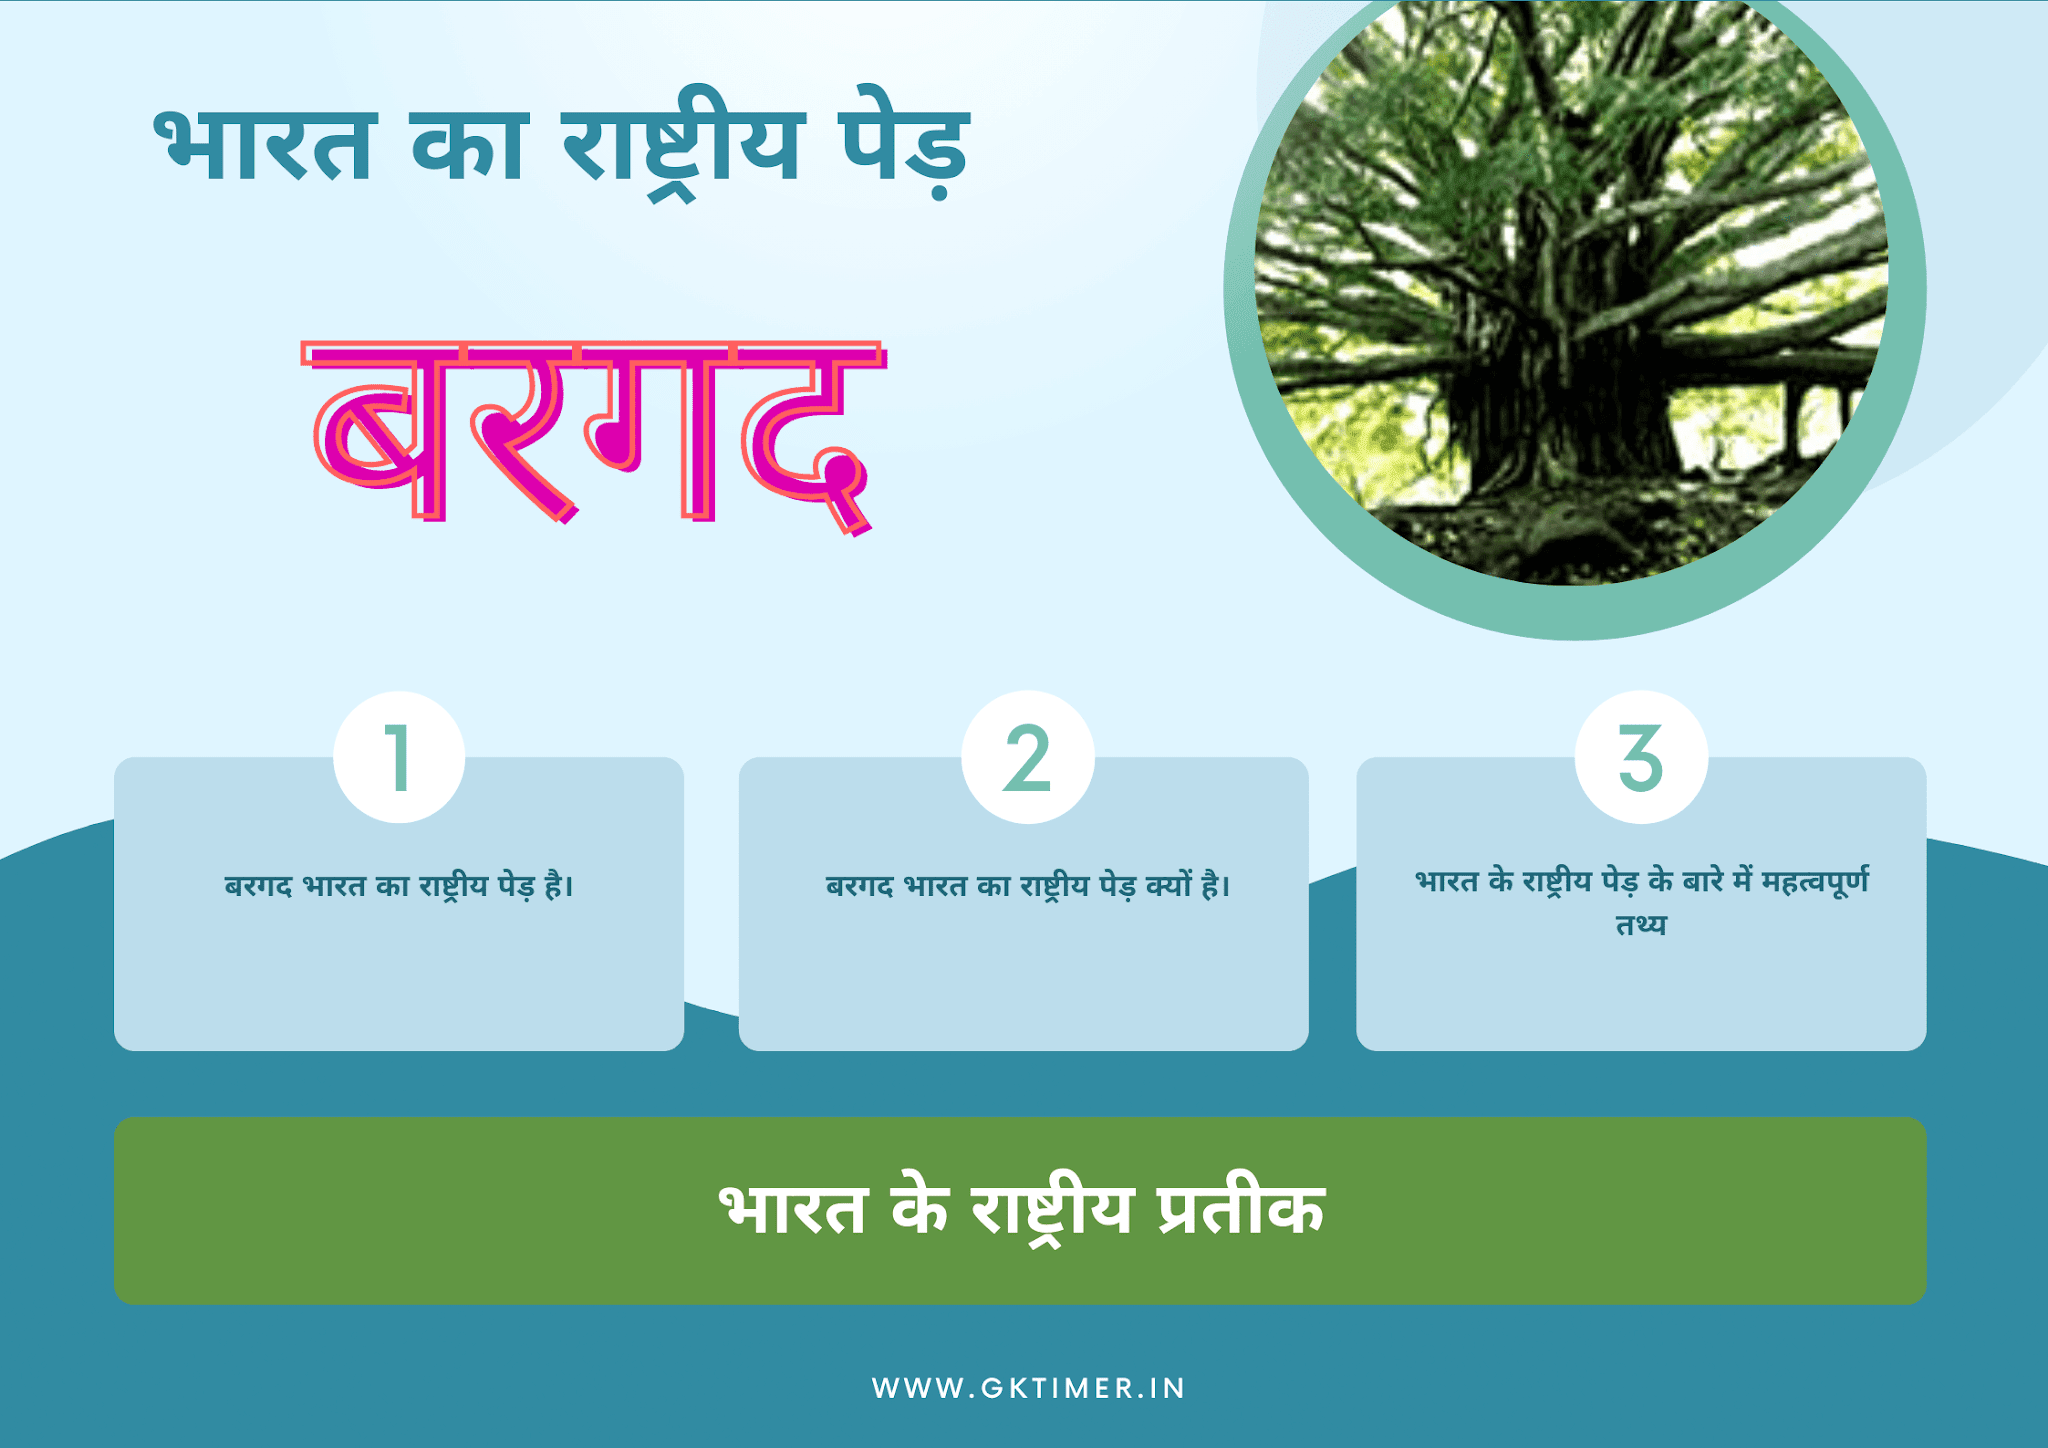 भारत का राष्ट्रीय पेड़ : बरगद | National Tree of India in Hindi